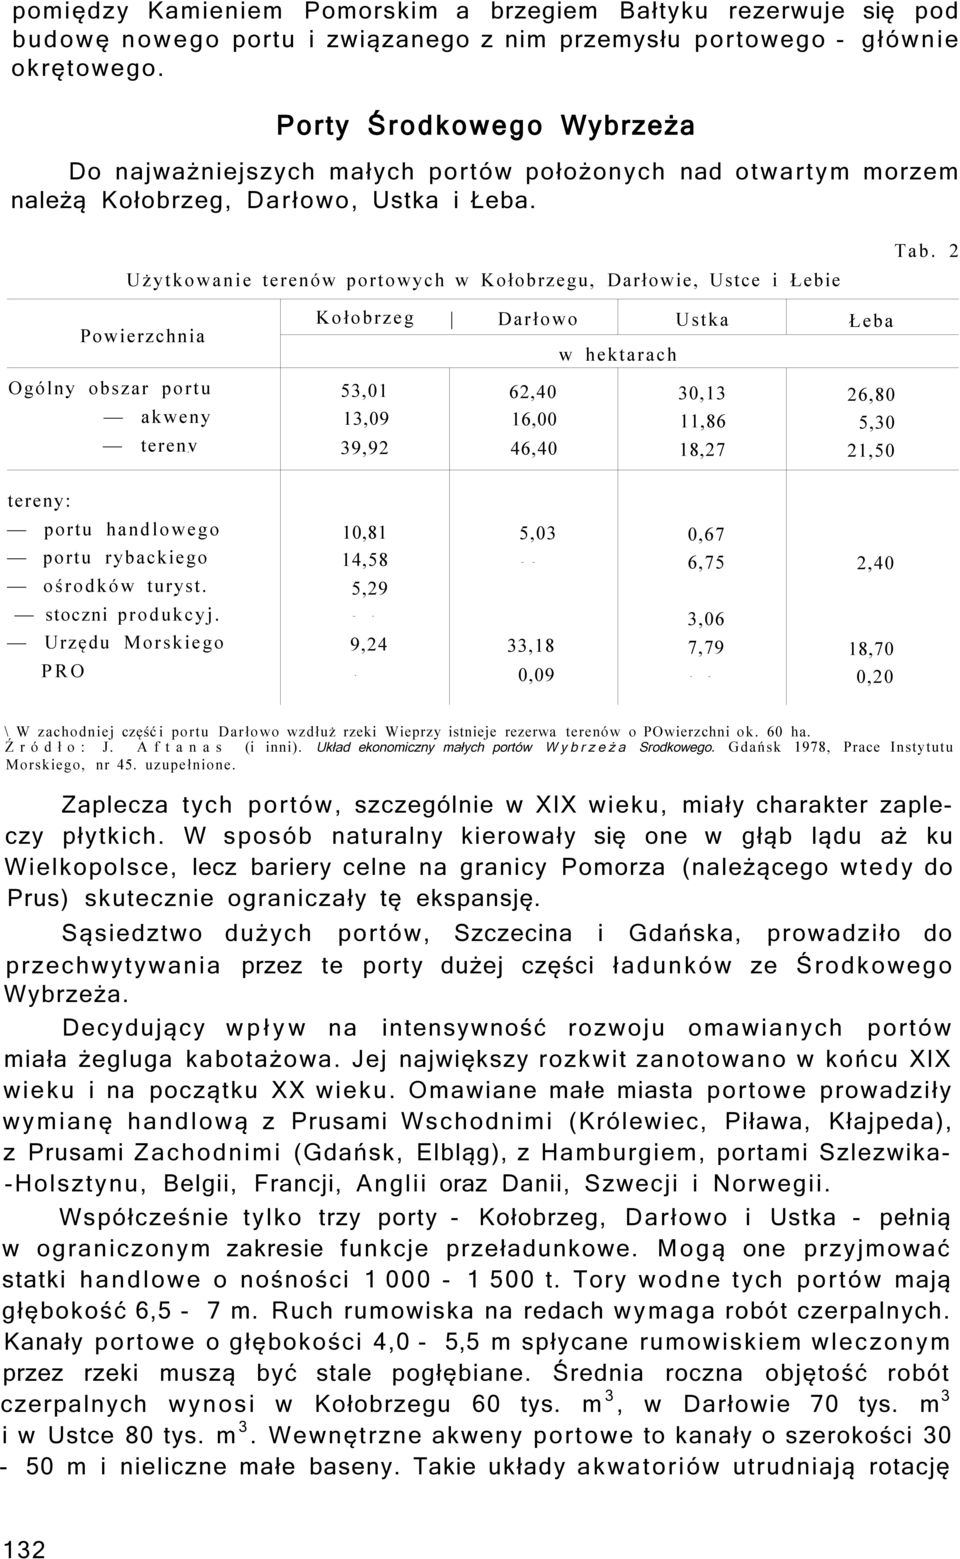 Użytkowanie terenów portowych w Kołobrzegu, Darłowie, Ustce i Łebie Tab.